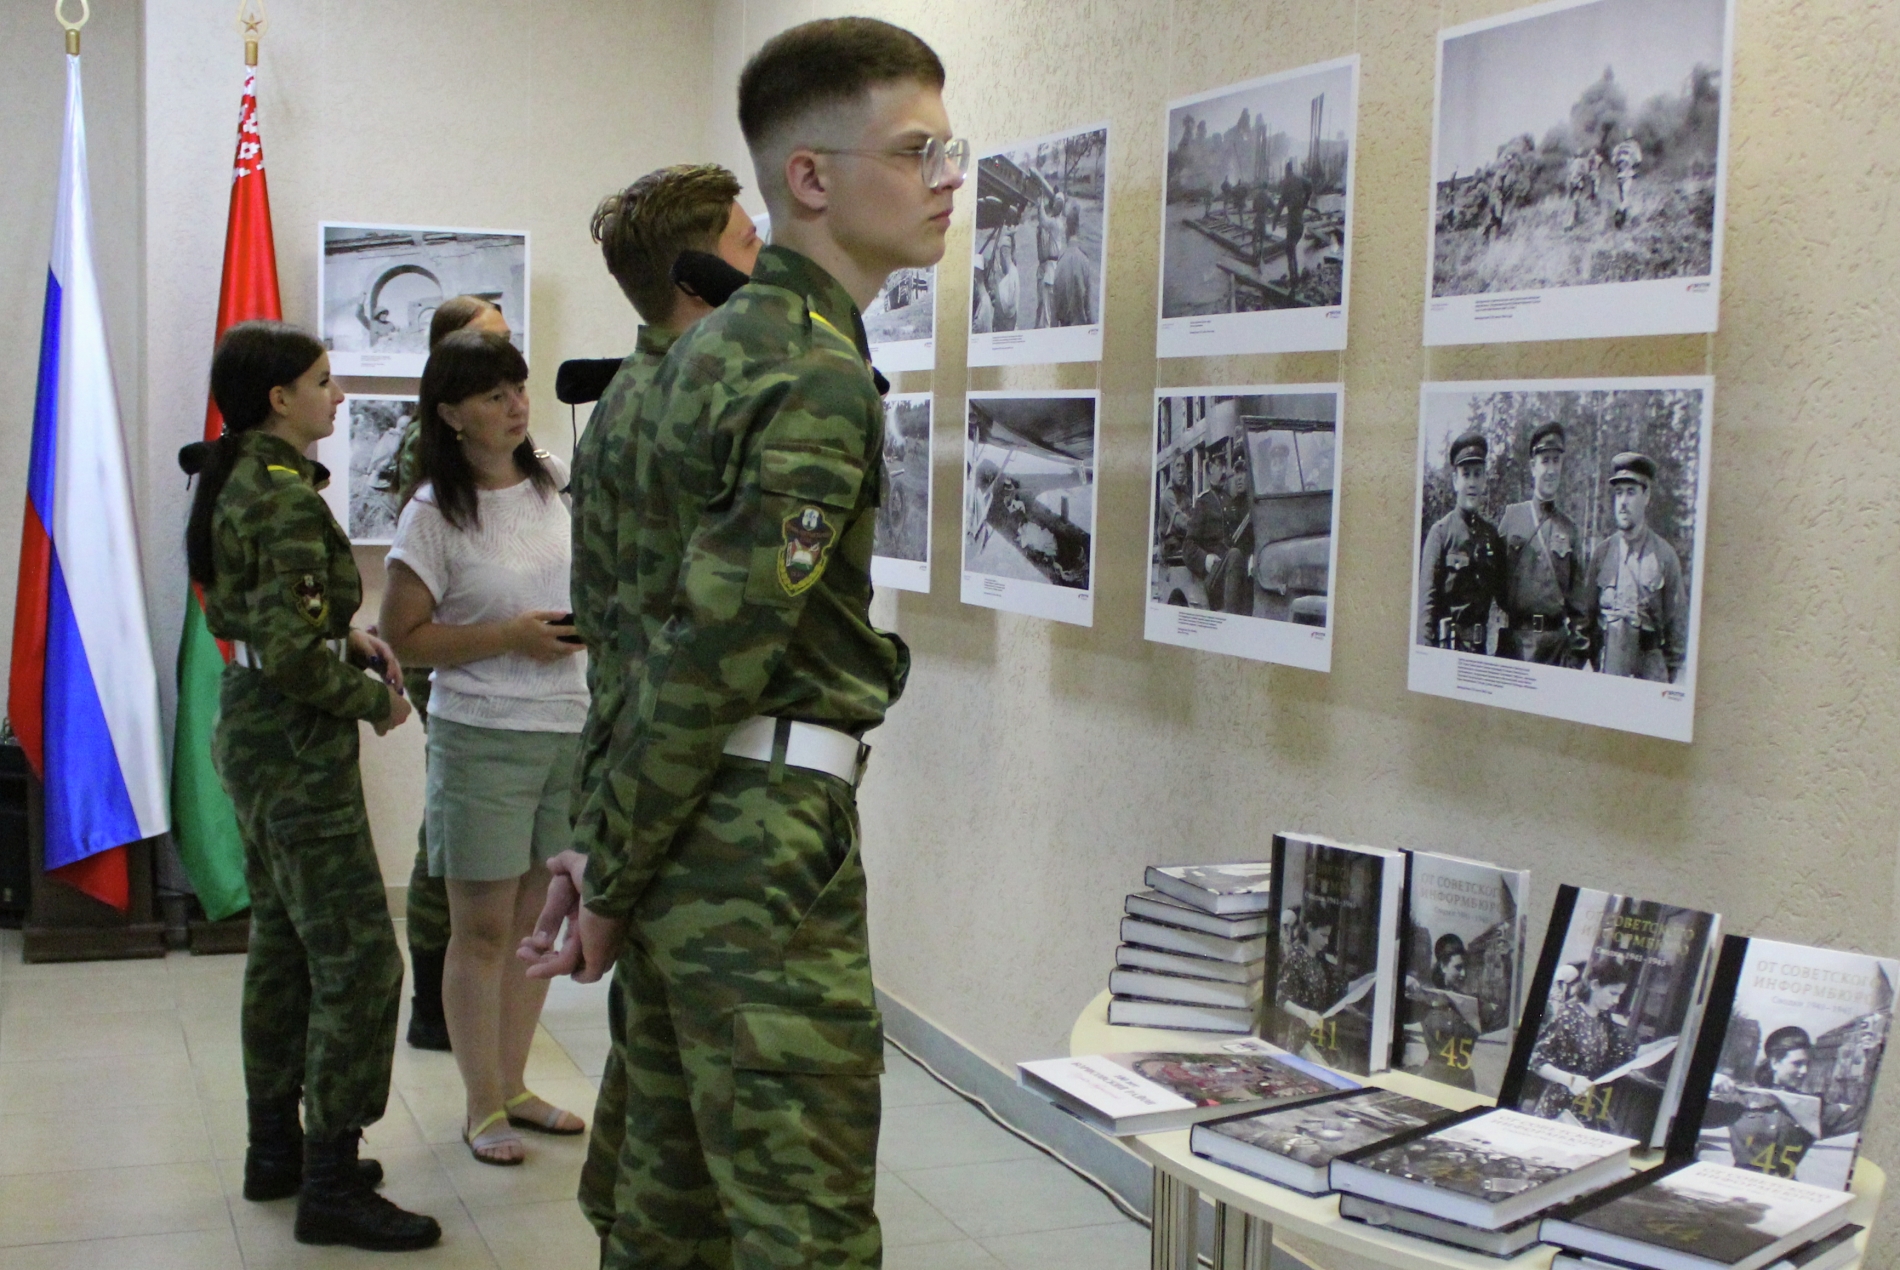 Фотовыставки "Освобождение. Путь к Победе" проходят в Минске и Борисове